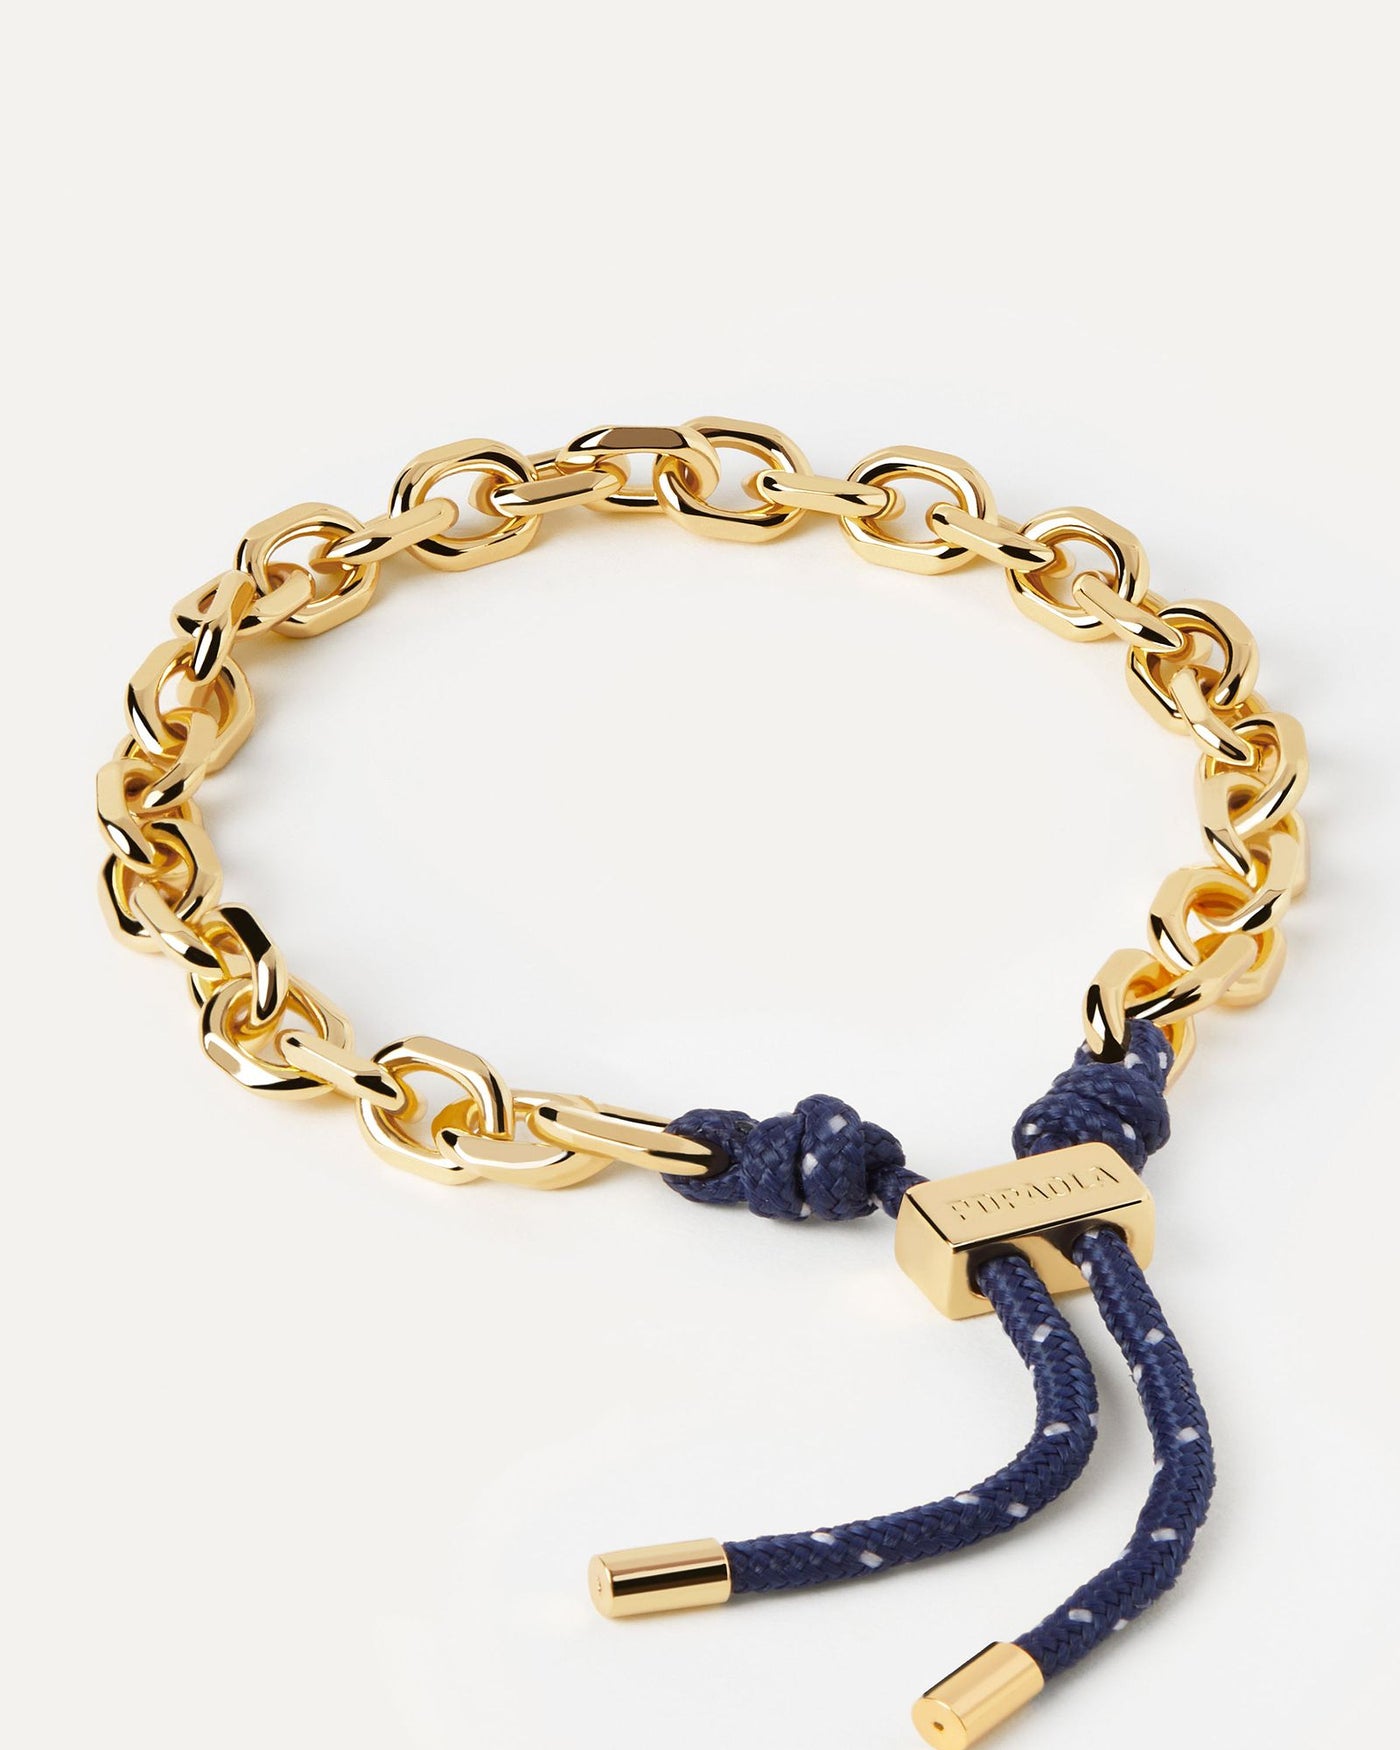 Sélection 2024 | Bracelet Cordon et Chaîne Midnight Essential. Bracelet chaîne doré avec corde bleu marine et fermoir coulissant ajustable. Découvrez les dernières nouveautés de chez PDPAOLA. Commandez et recevez votre bijou en toute sérénité. Livraison gratuite.